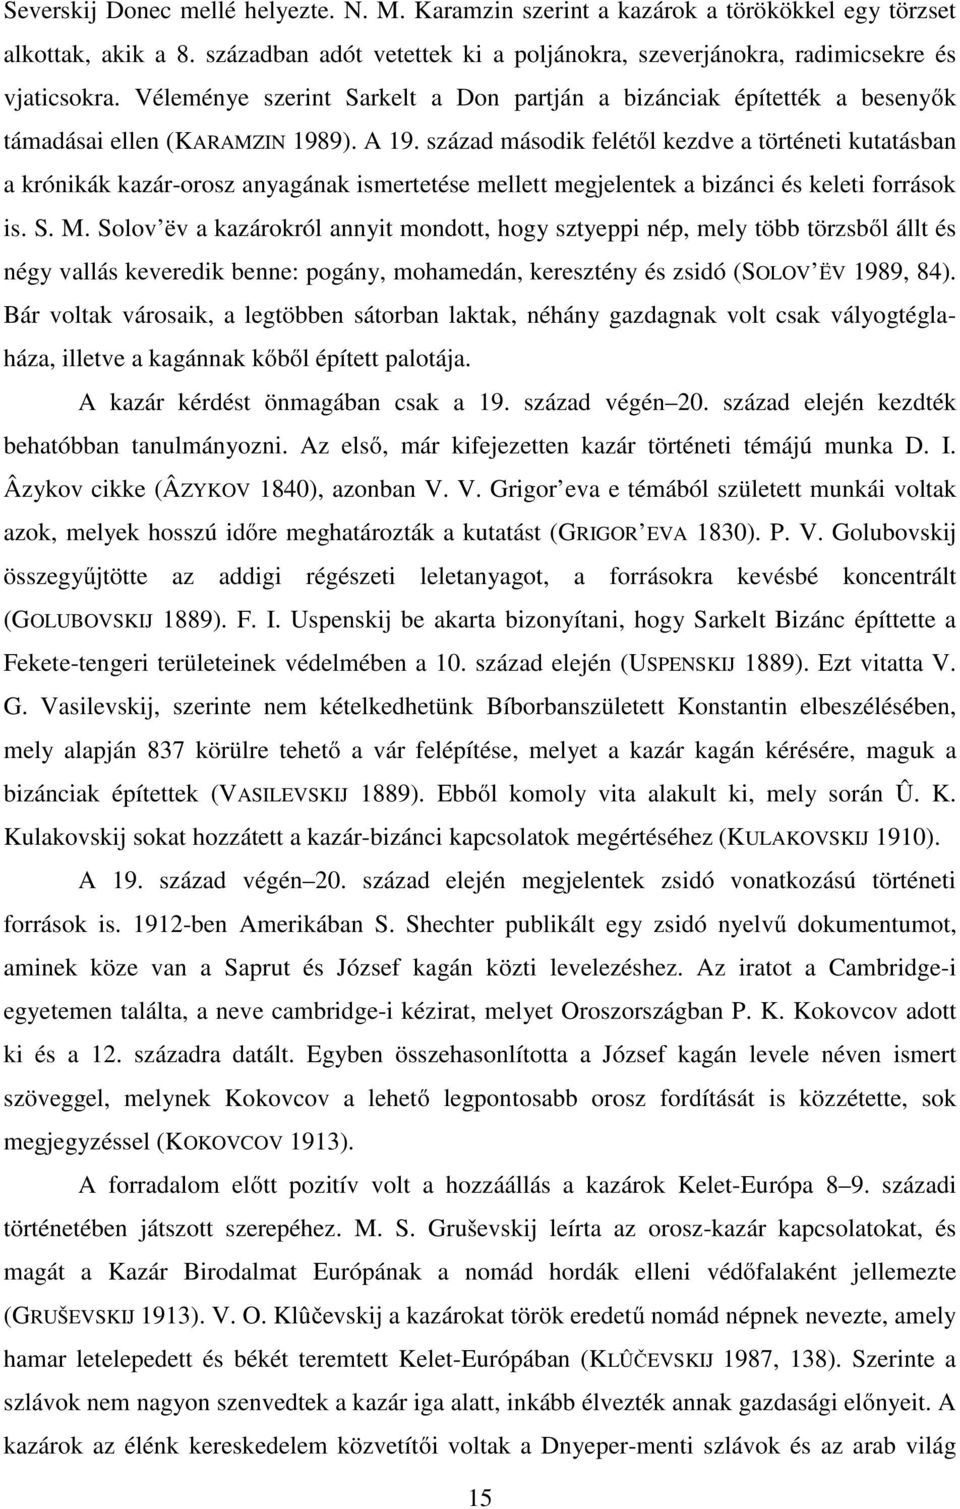 század második felétől kezdve a történeti kutatásban a krónikák kazár-orosz anyagának ismertetése mellett megjelentek a bizánci és keleti források is. S. M.